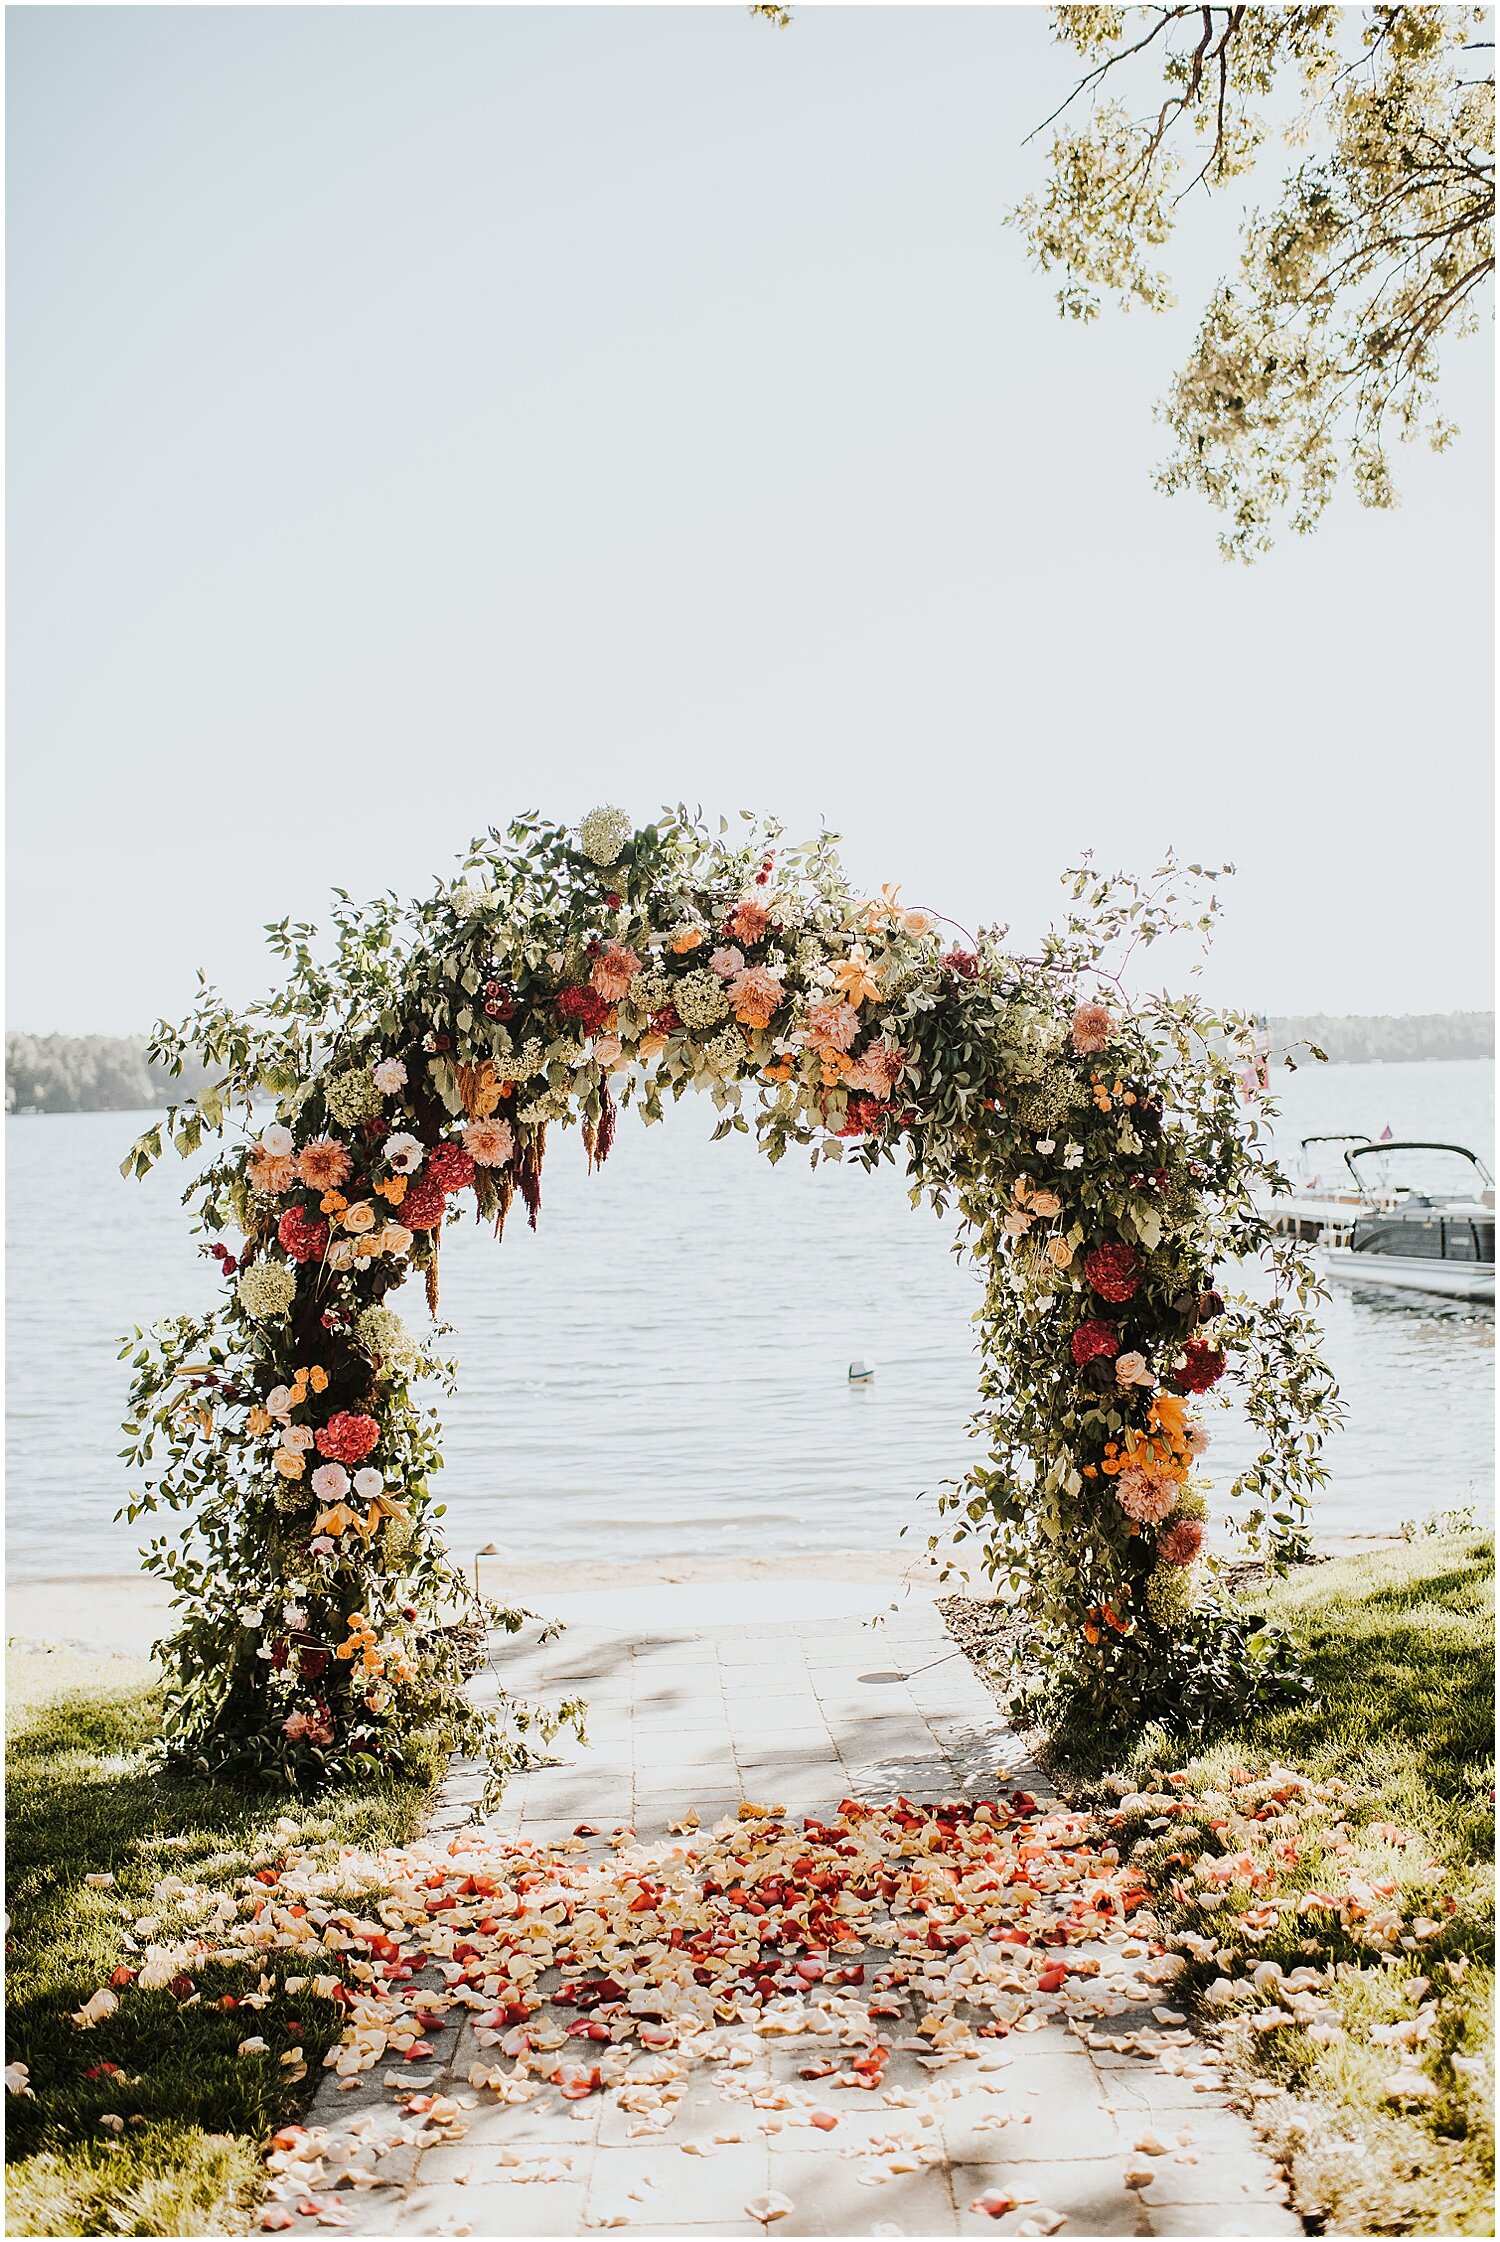  wedding floral arch  